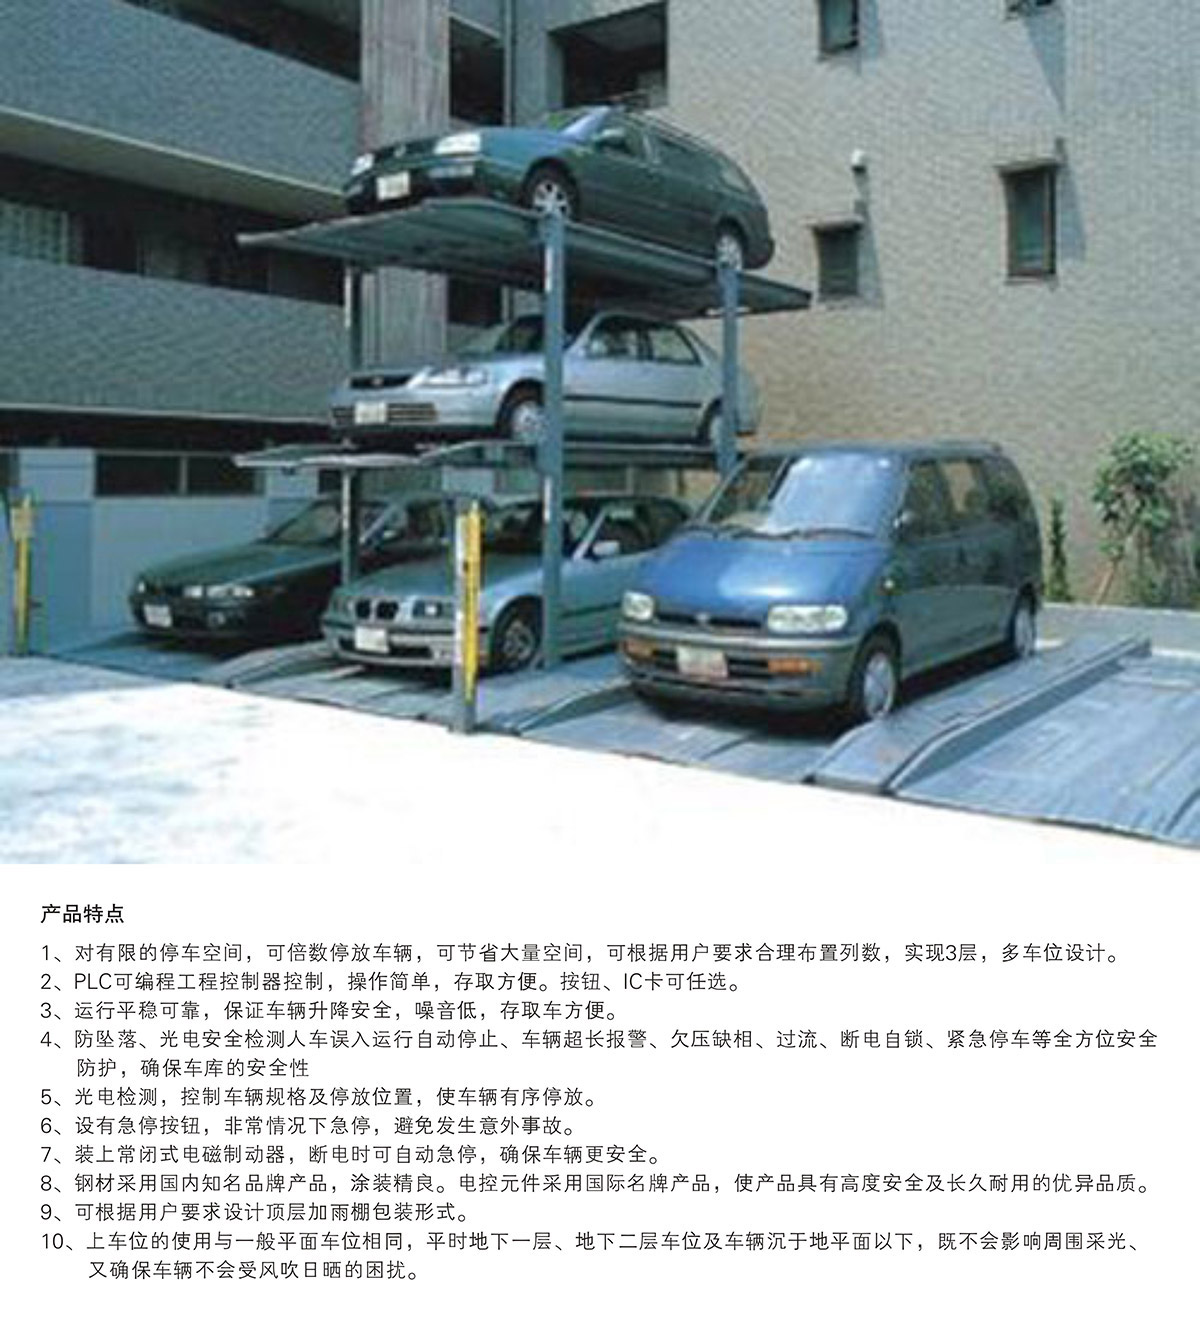 机械立体车库PJS3D2三层地坑简易升降立体停车产品特点.jpg